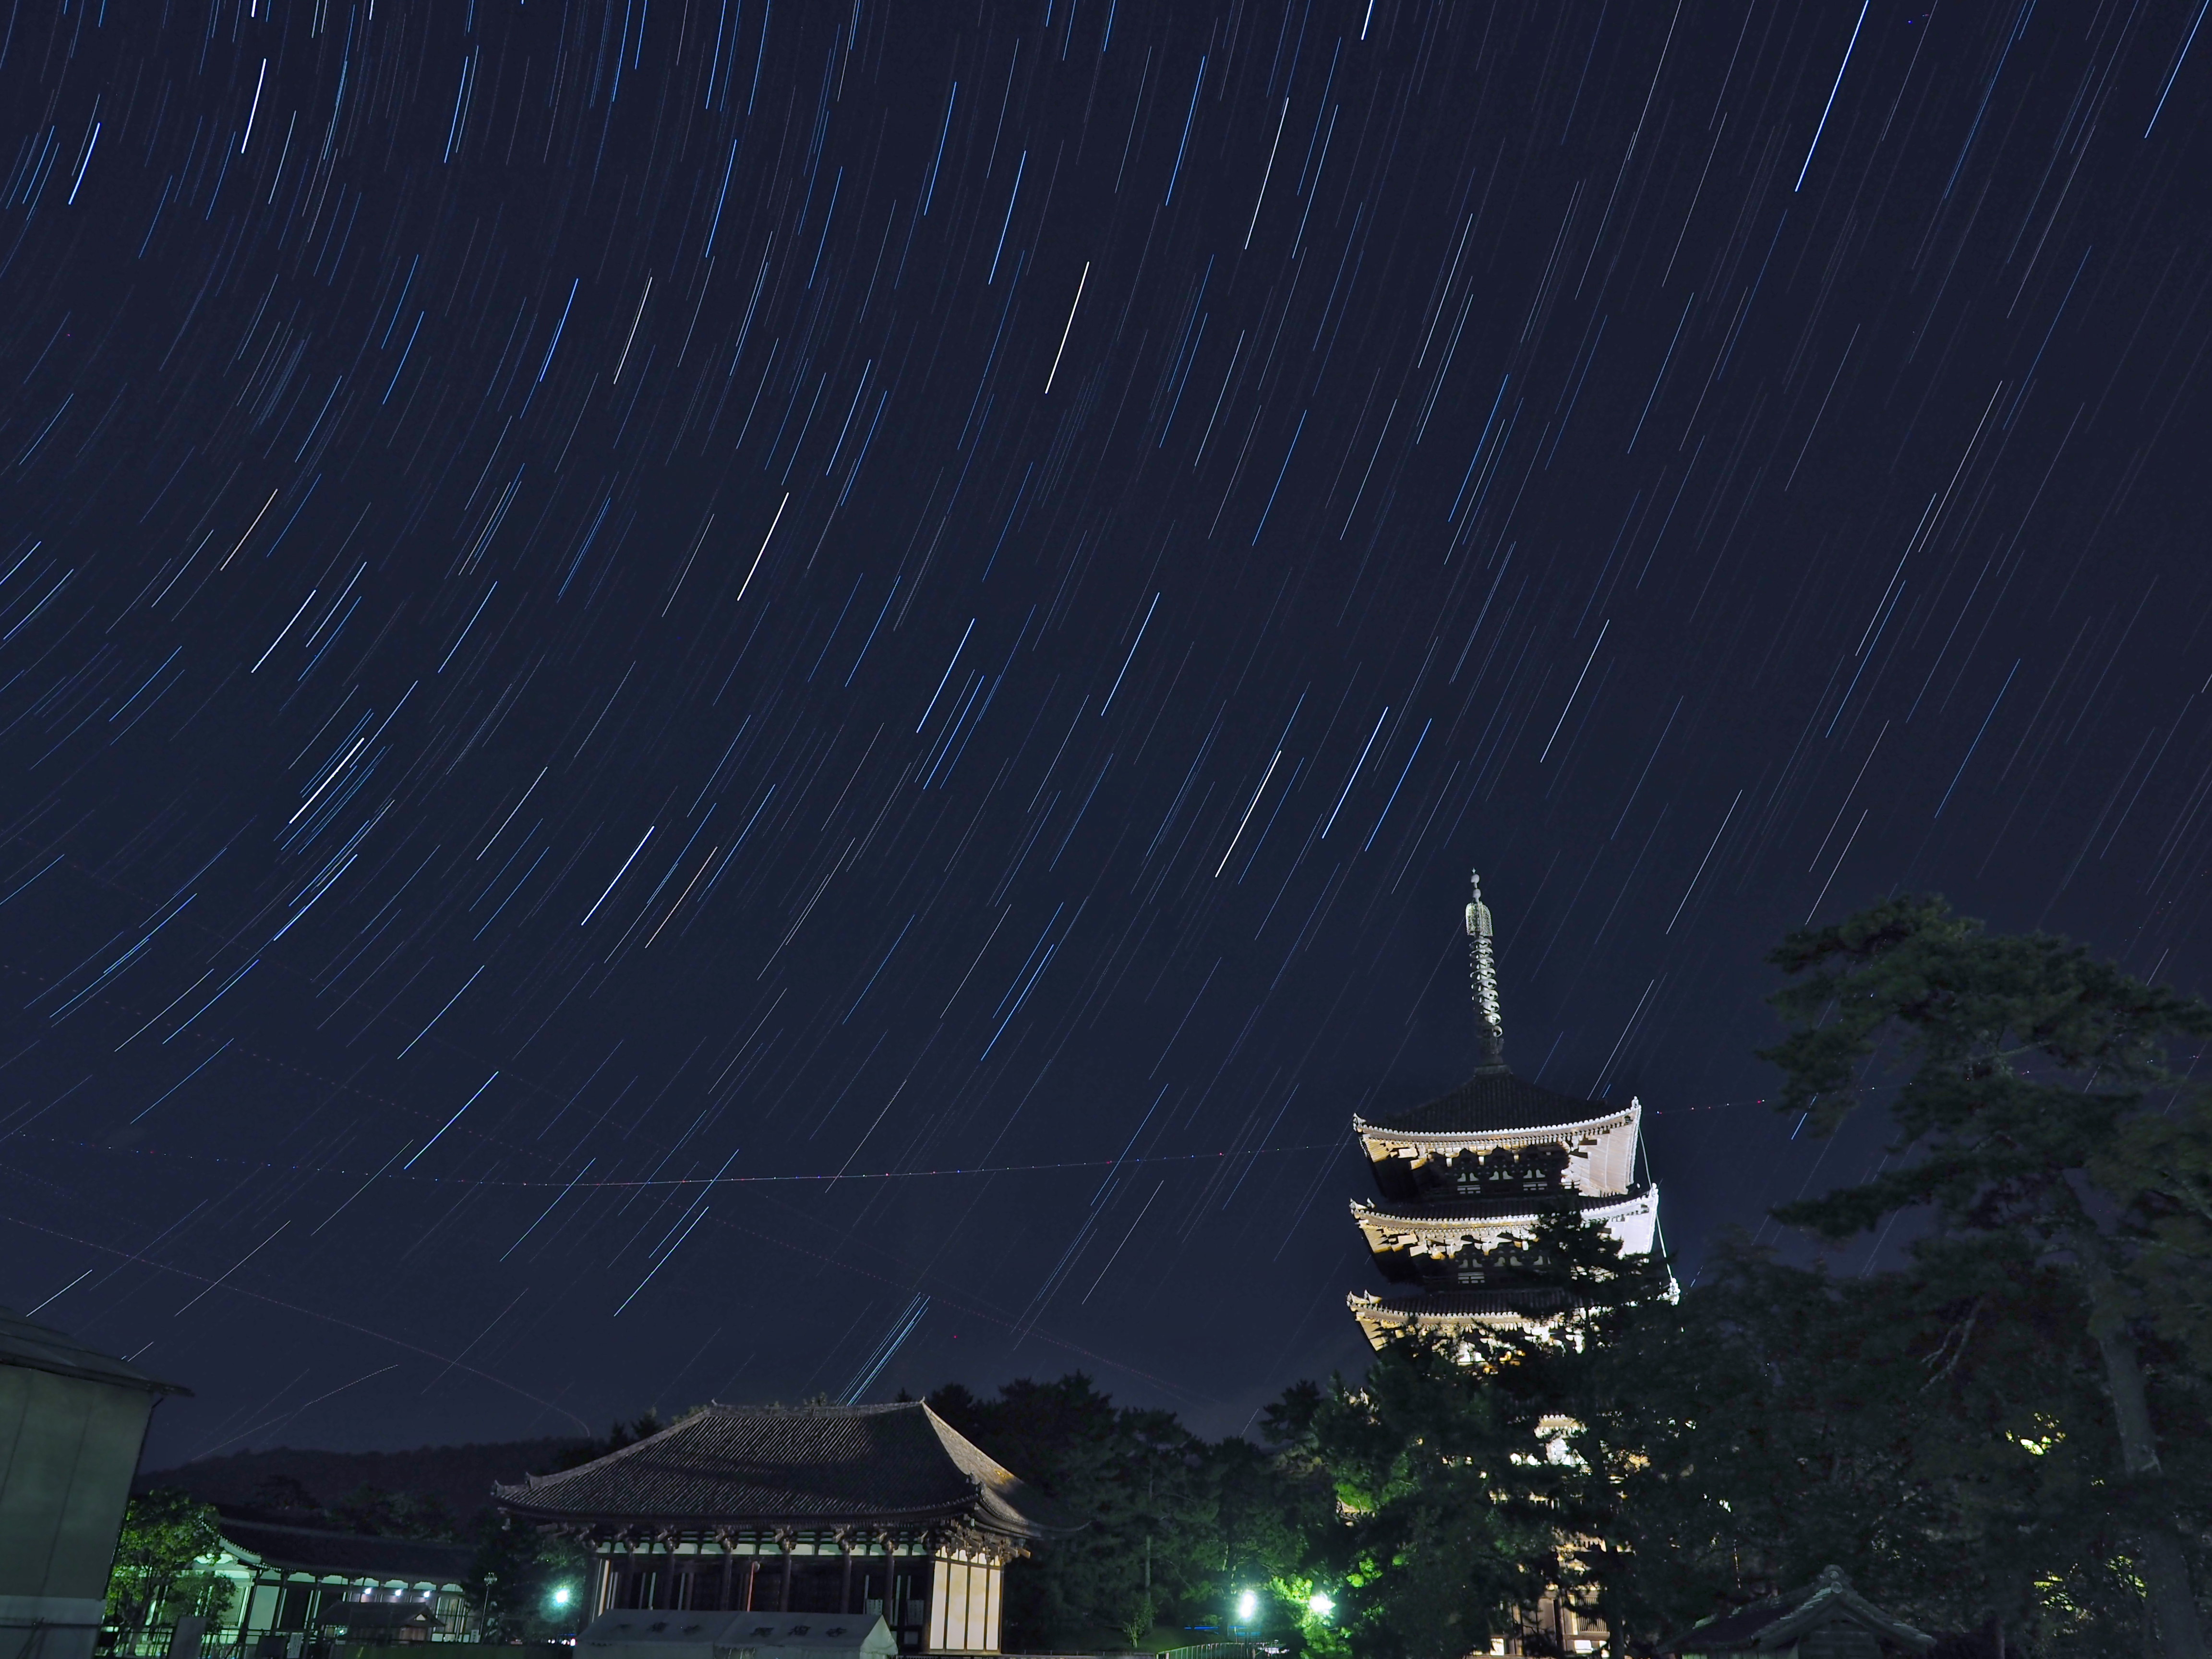 西川ヒトシ先生の「街なかで星の軌跡を撮ろう♪」